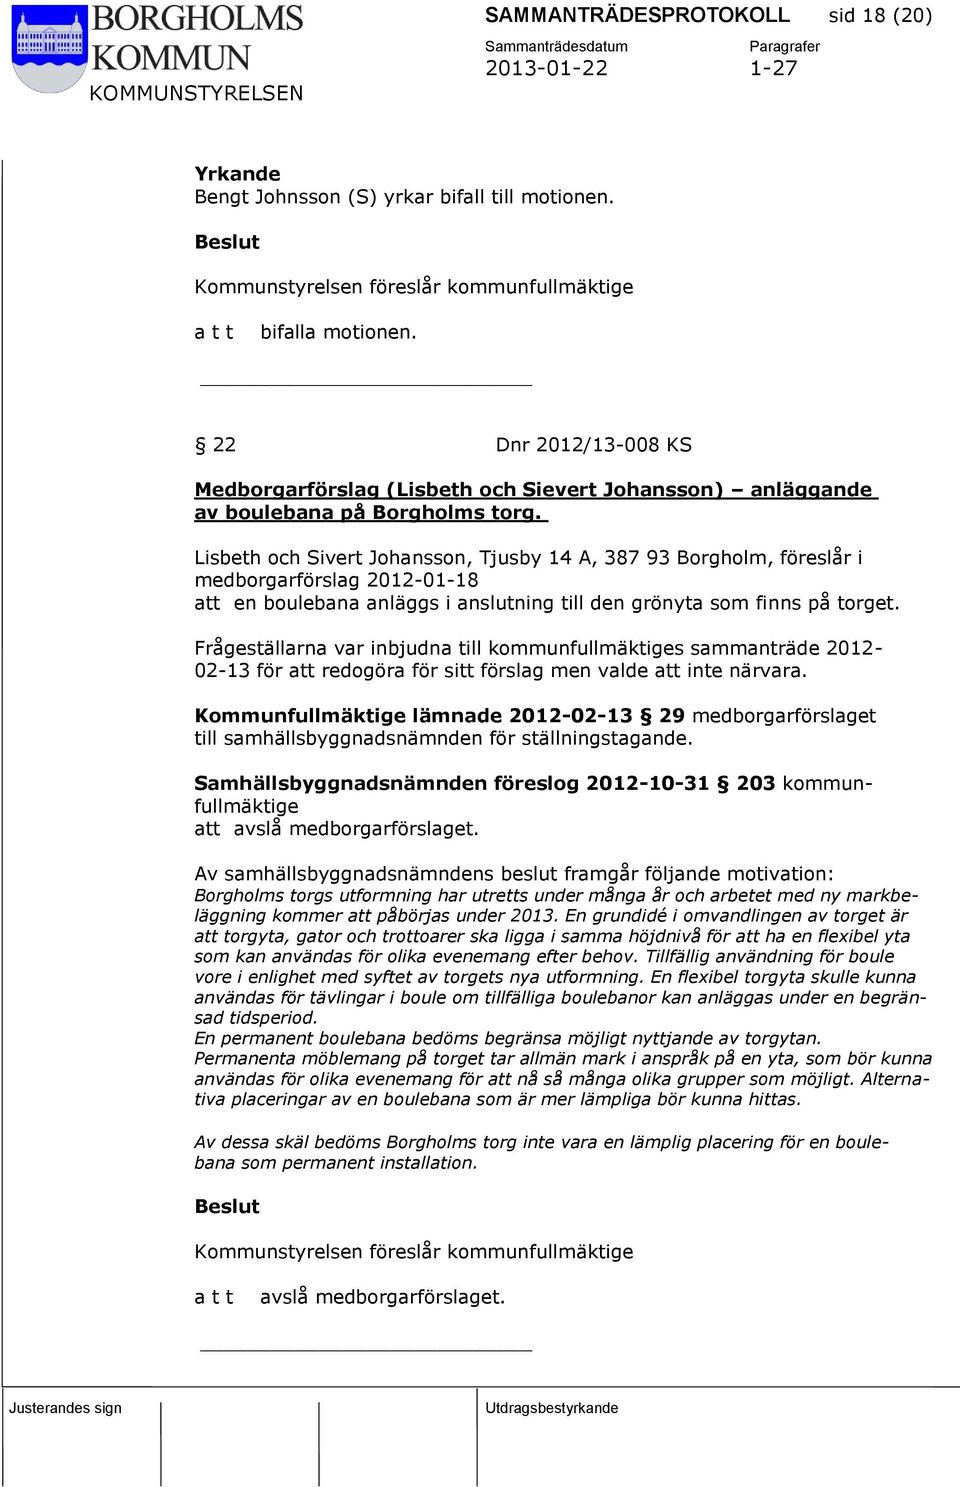 Lisbeth och Sivert Johansson, Tjusby 14 A, 387 93 Borgholm, föreslår i medborgarförslag 2012-01-18 att en boulebana anläggs i anslutning till den grönyta som finns på torget.